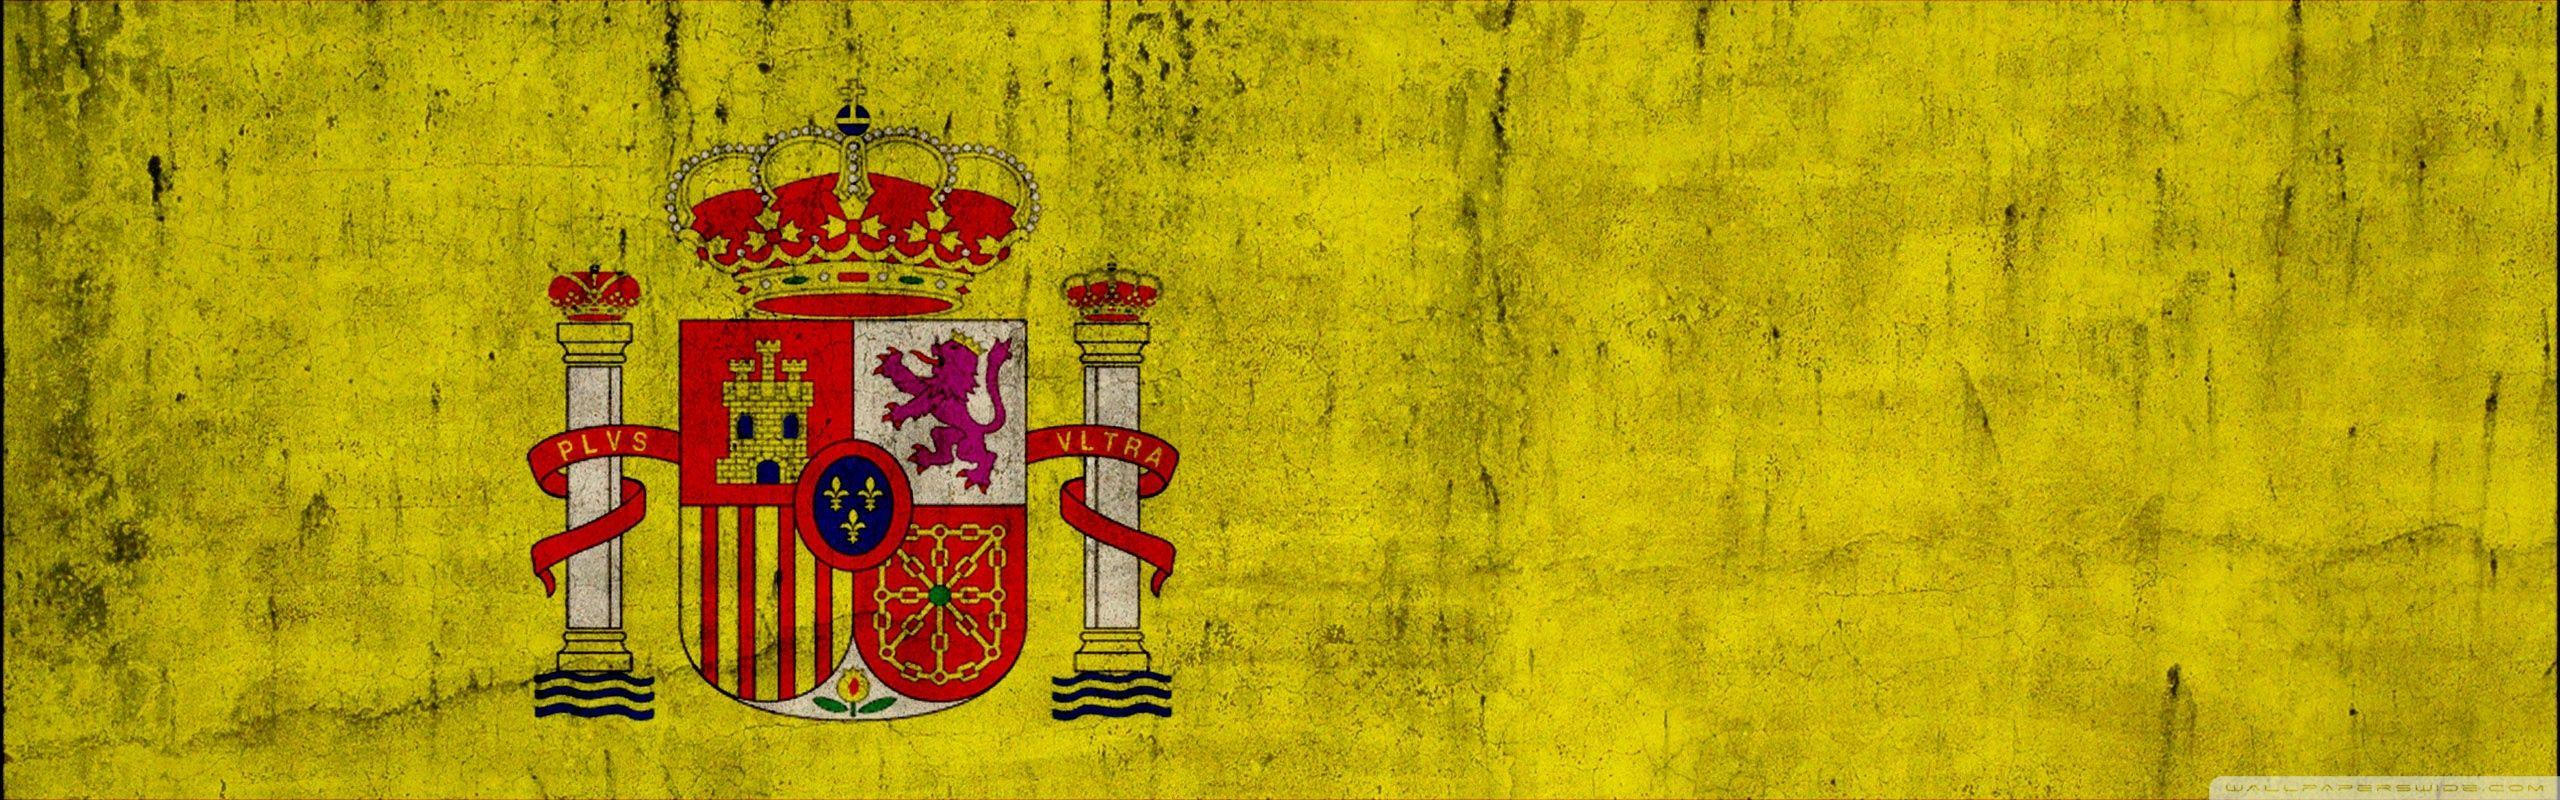 Герб Испании на желтом фоне